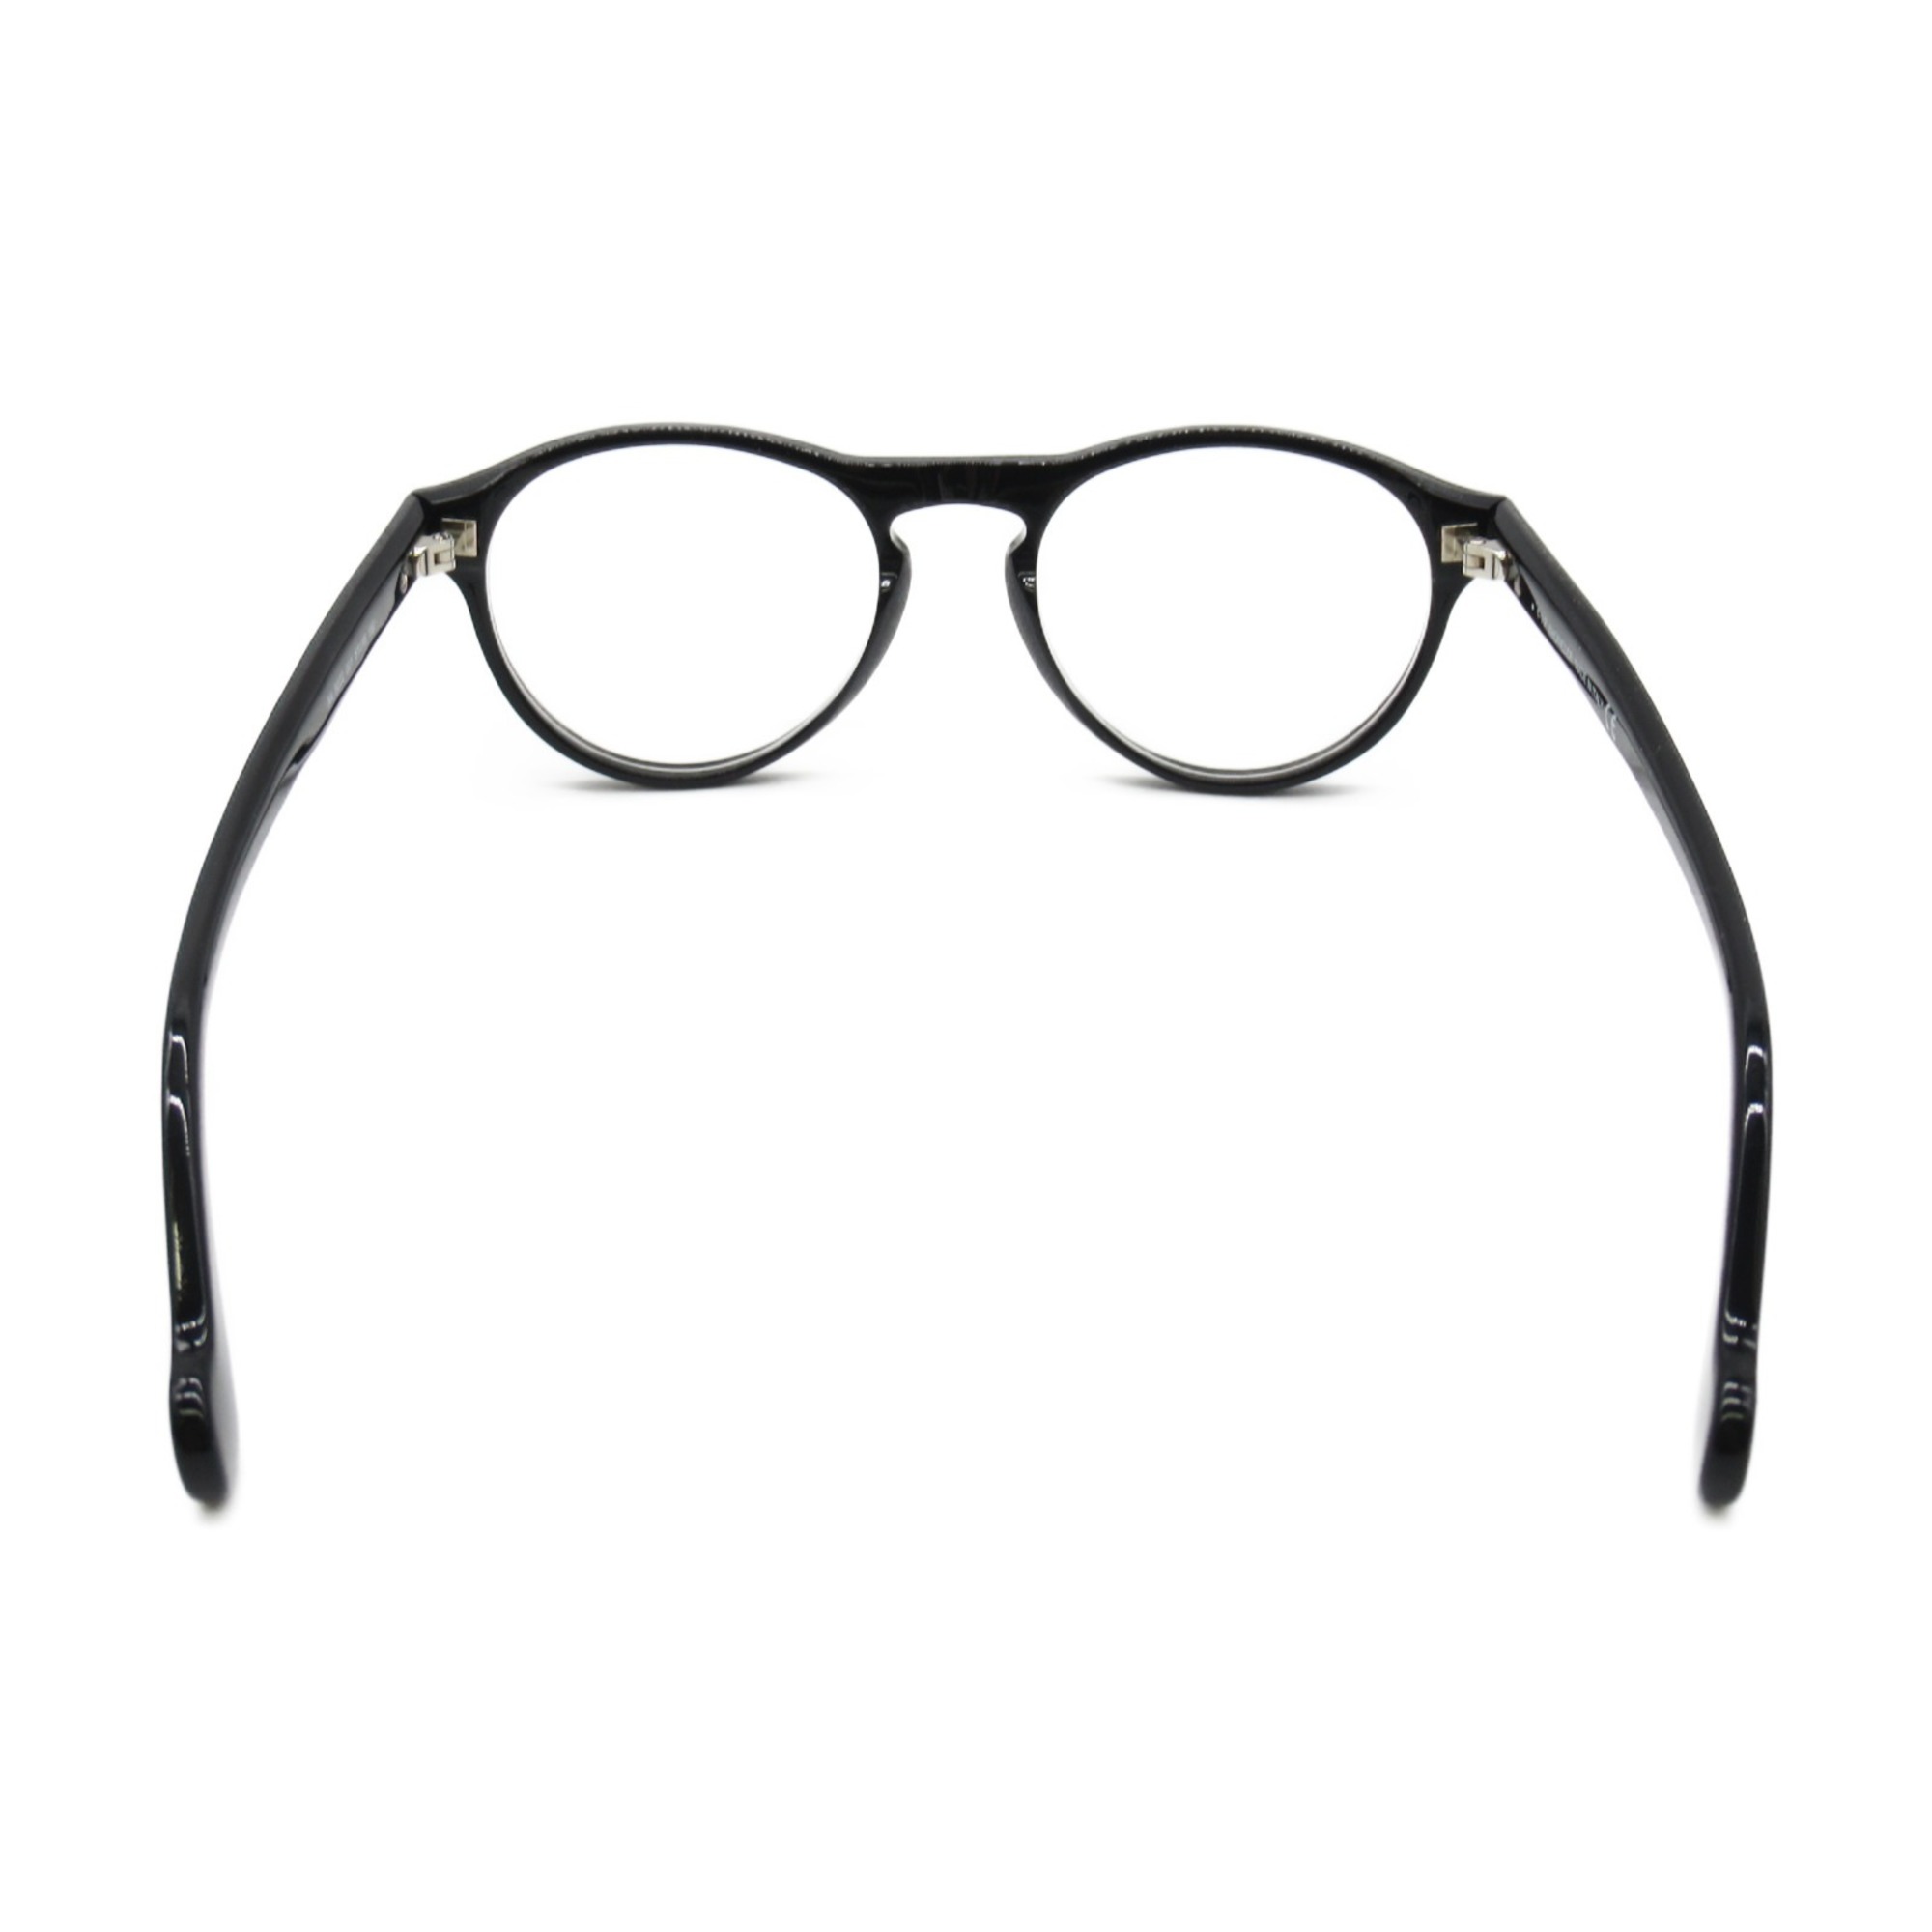 MONCLER Date Glasses Glasses Frame Black Plastic 5022 001(51)